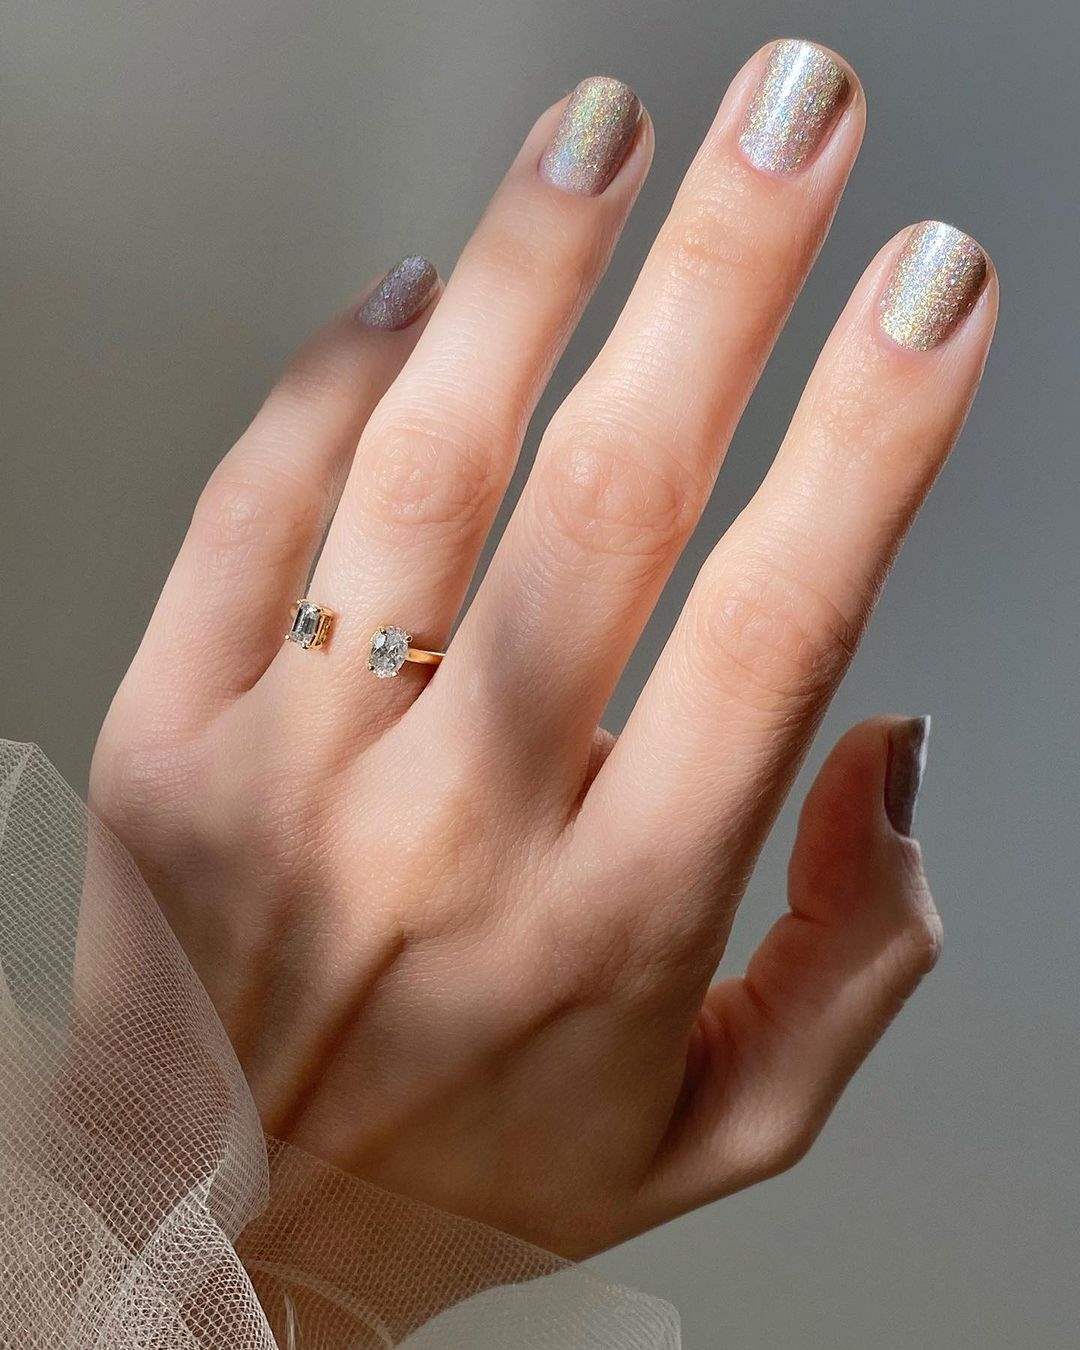 Magical Spa on Instagram Forrado uña natural magicalnailspa nails  nailsaddict  Manicura para uñas cortas Manicura de uñas Uñas manos y  pies